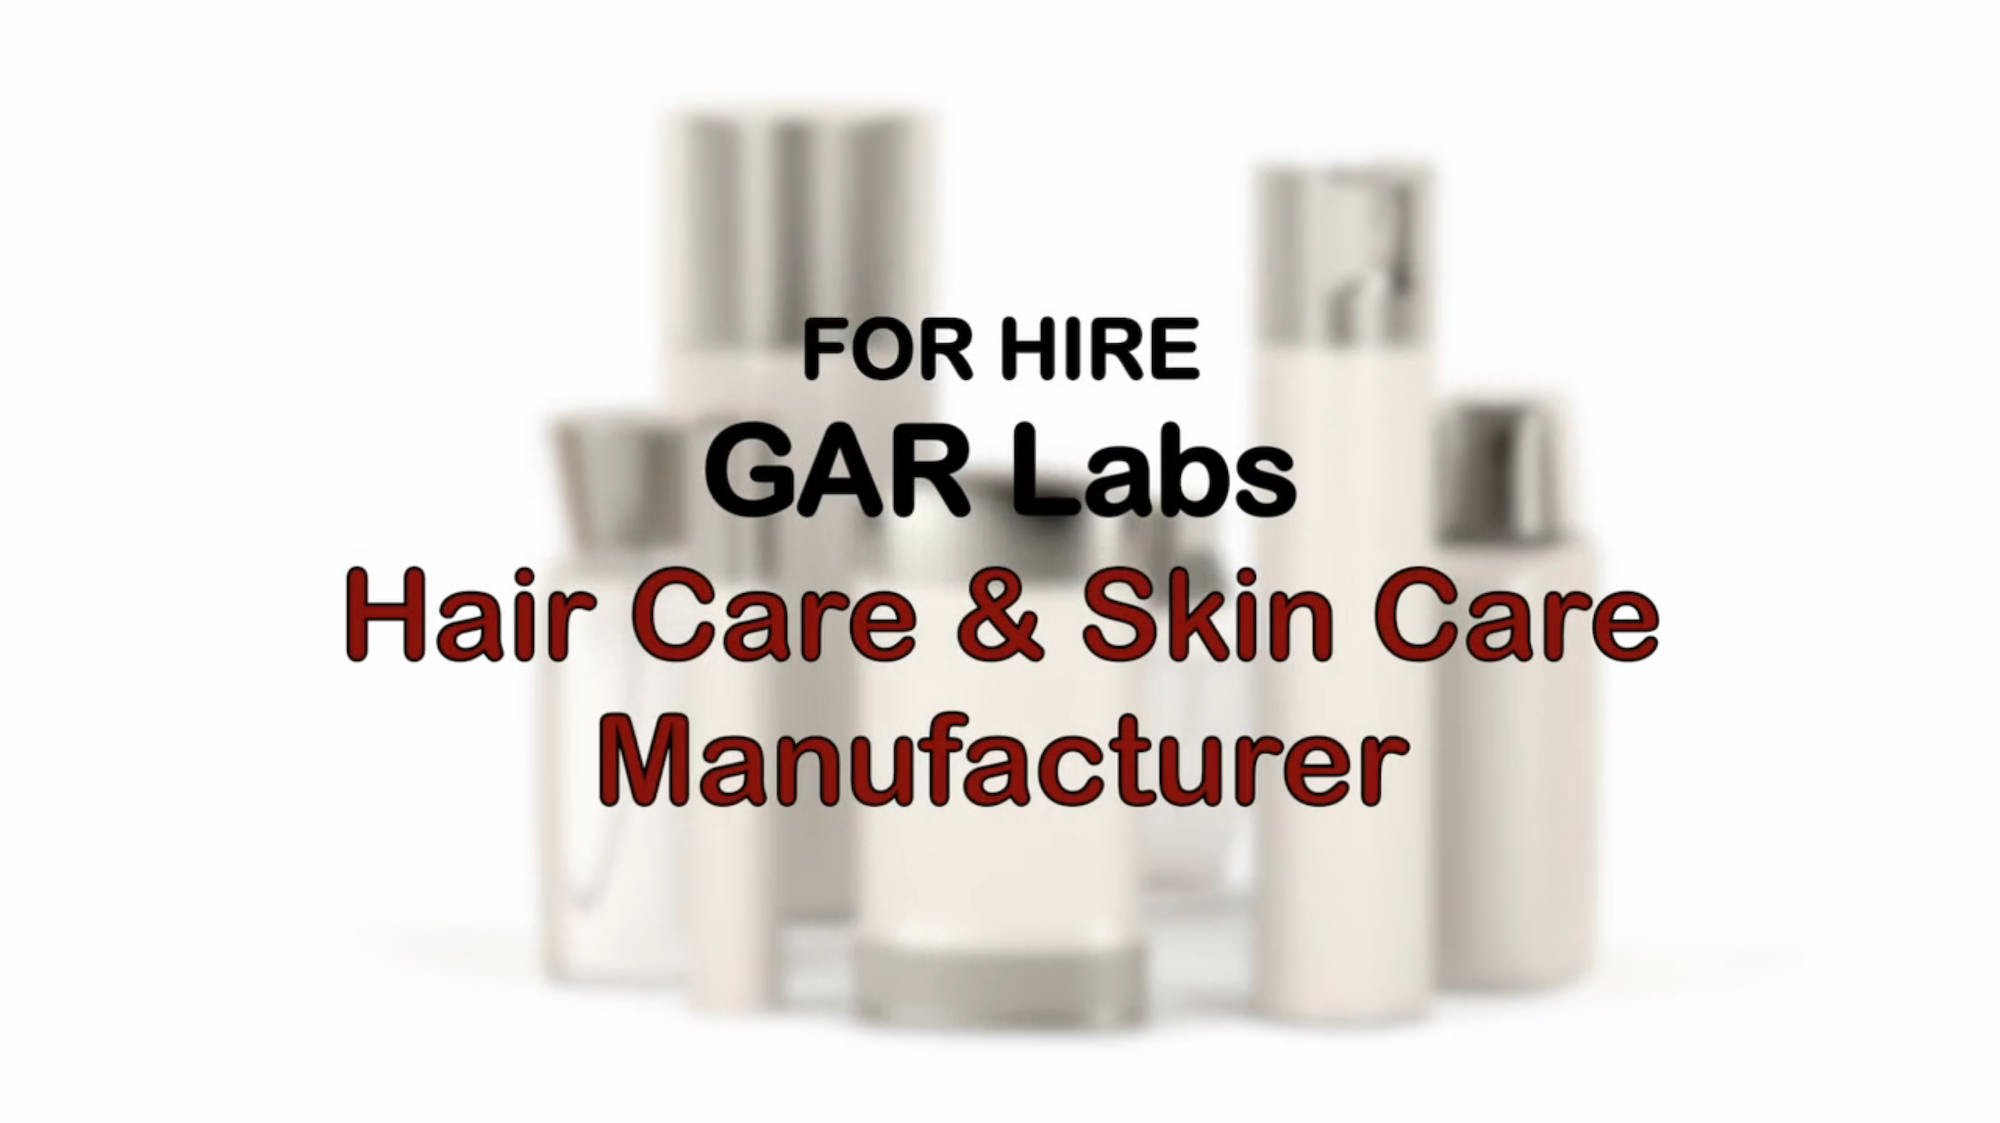 GAR Laboratories